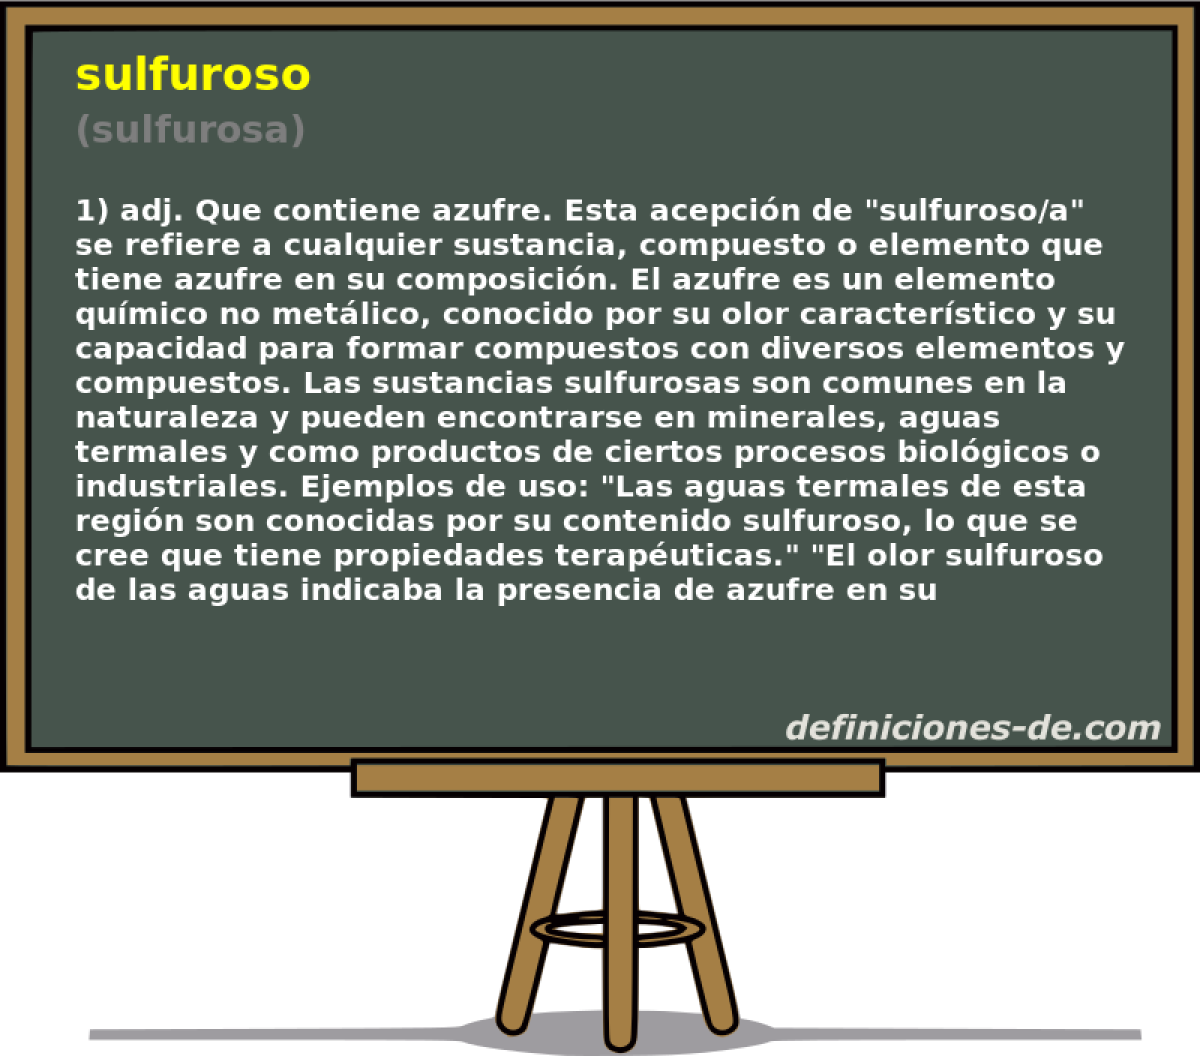 sulfuroso (sulfurosa)